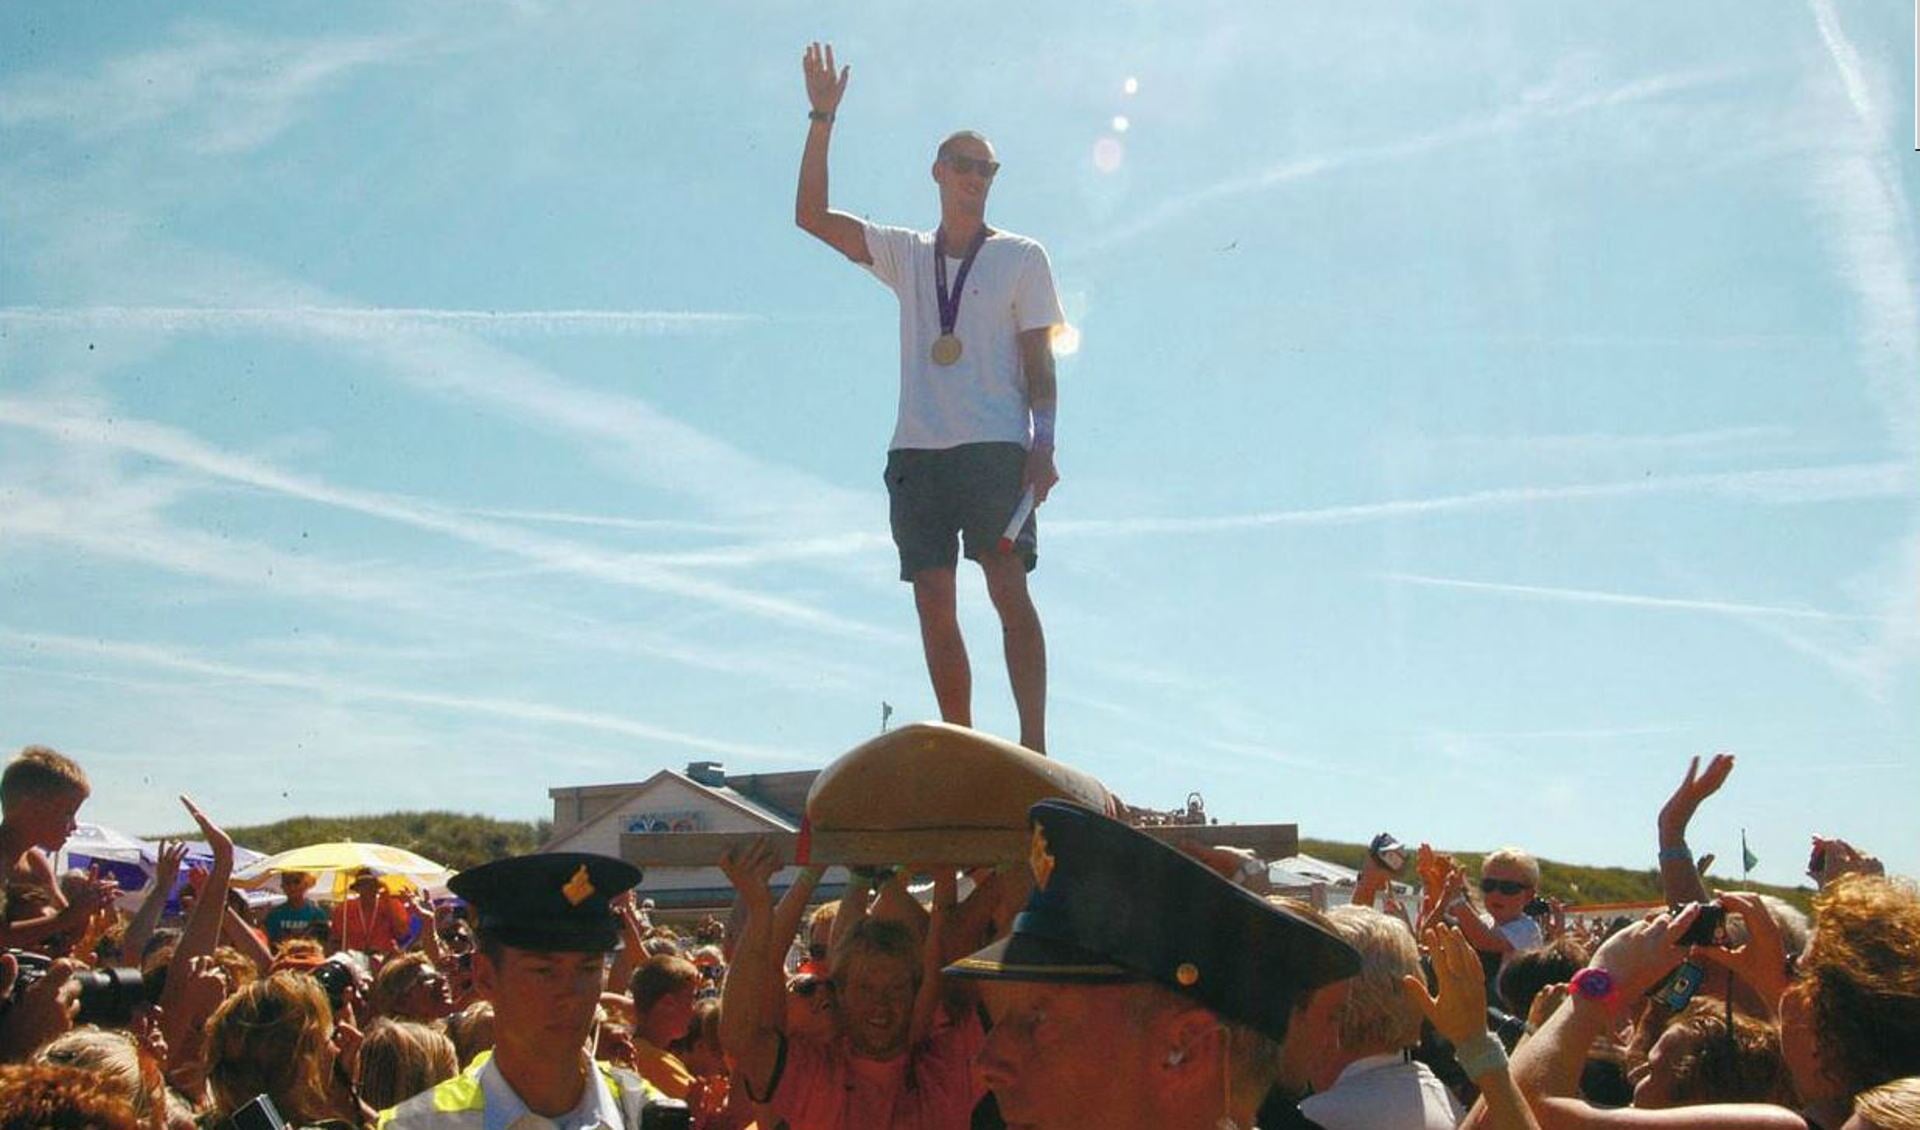 De huldiging van Dorian in 2012 bij Paal 17 toen hij voor de eerste keer Olympisch kampioen was geworden.